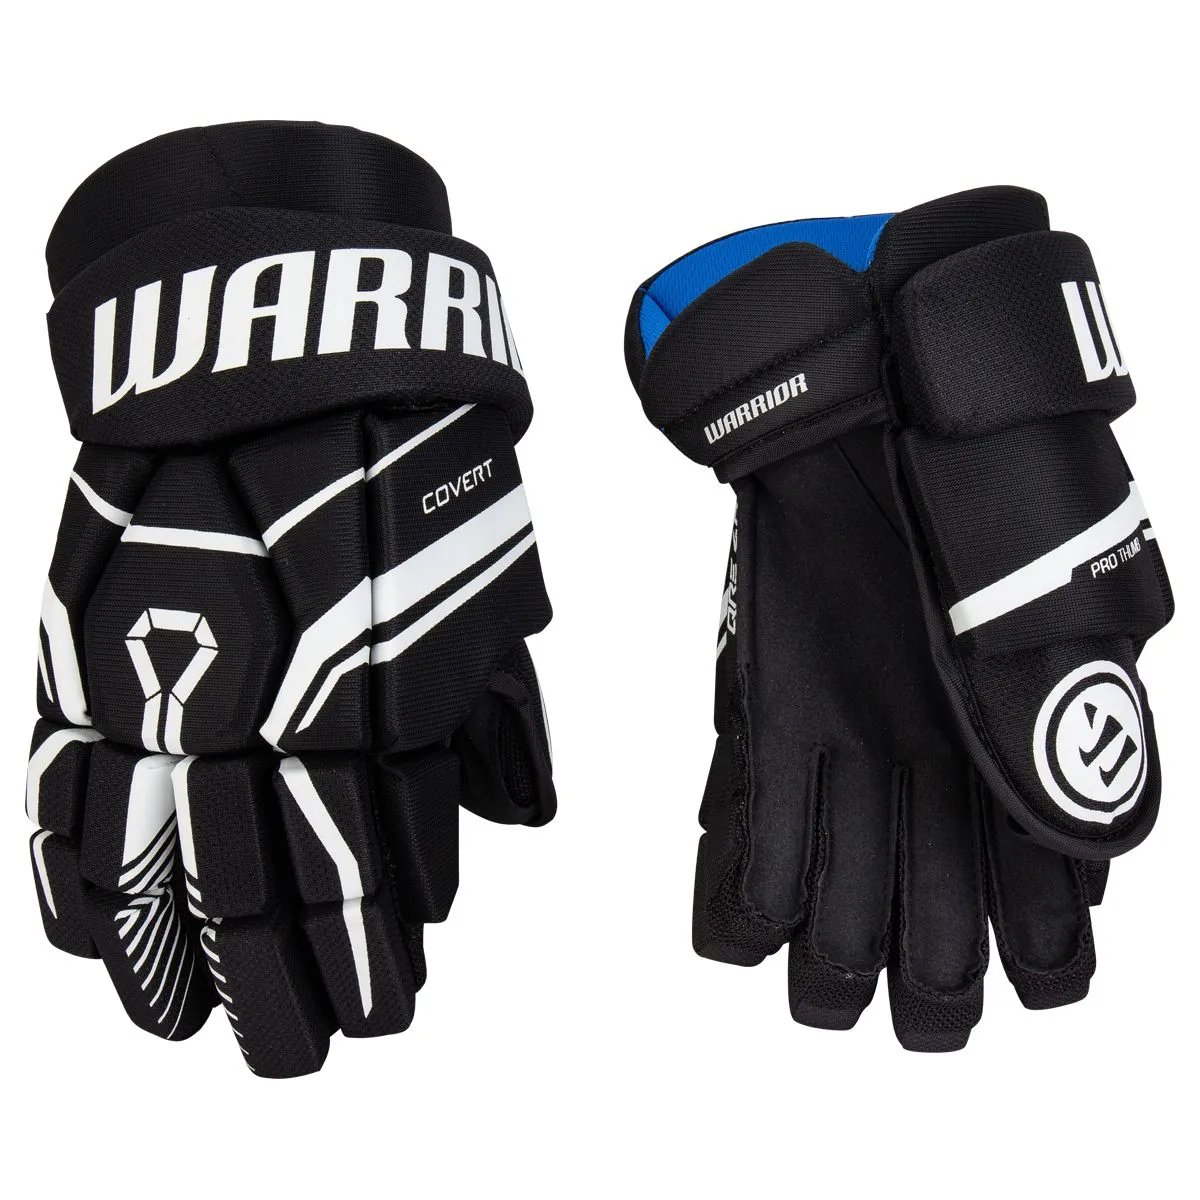 WARRIOR Covert QRE 40 Junior Ice Hockey Gloves